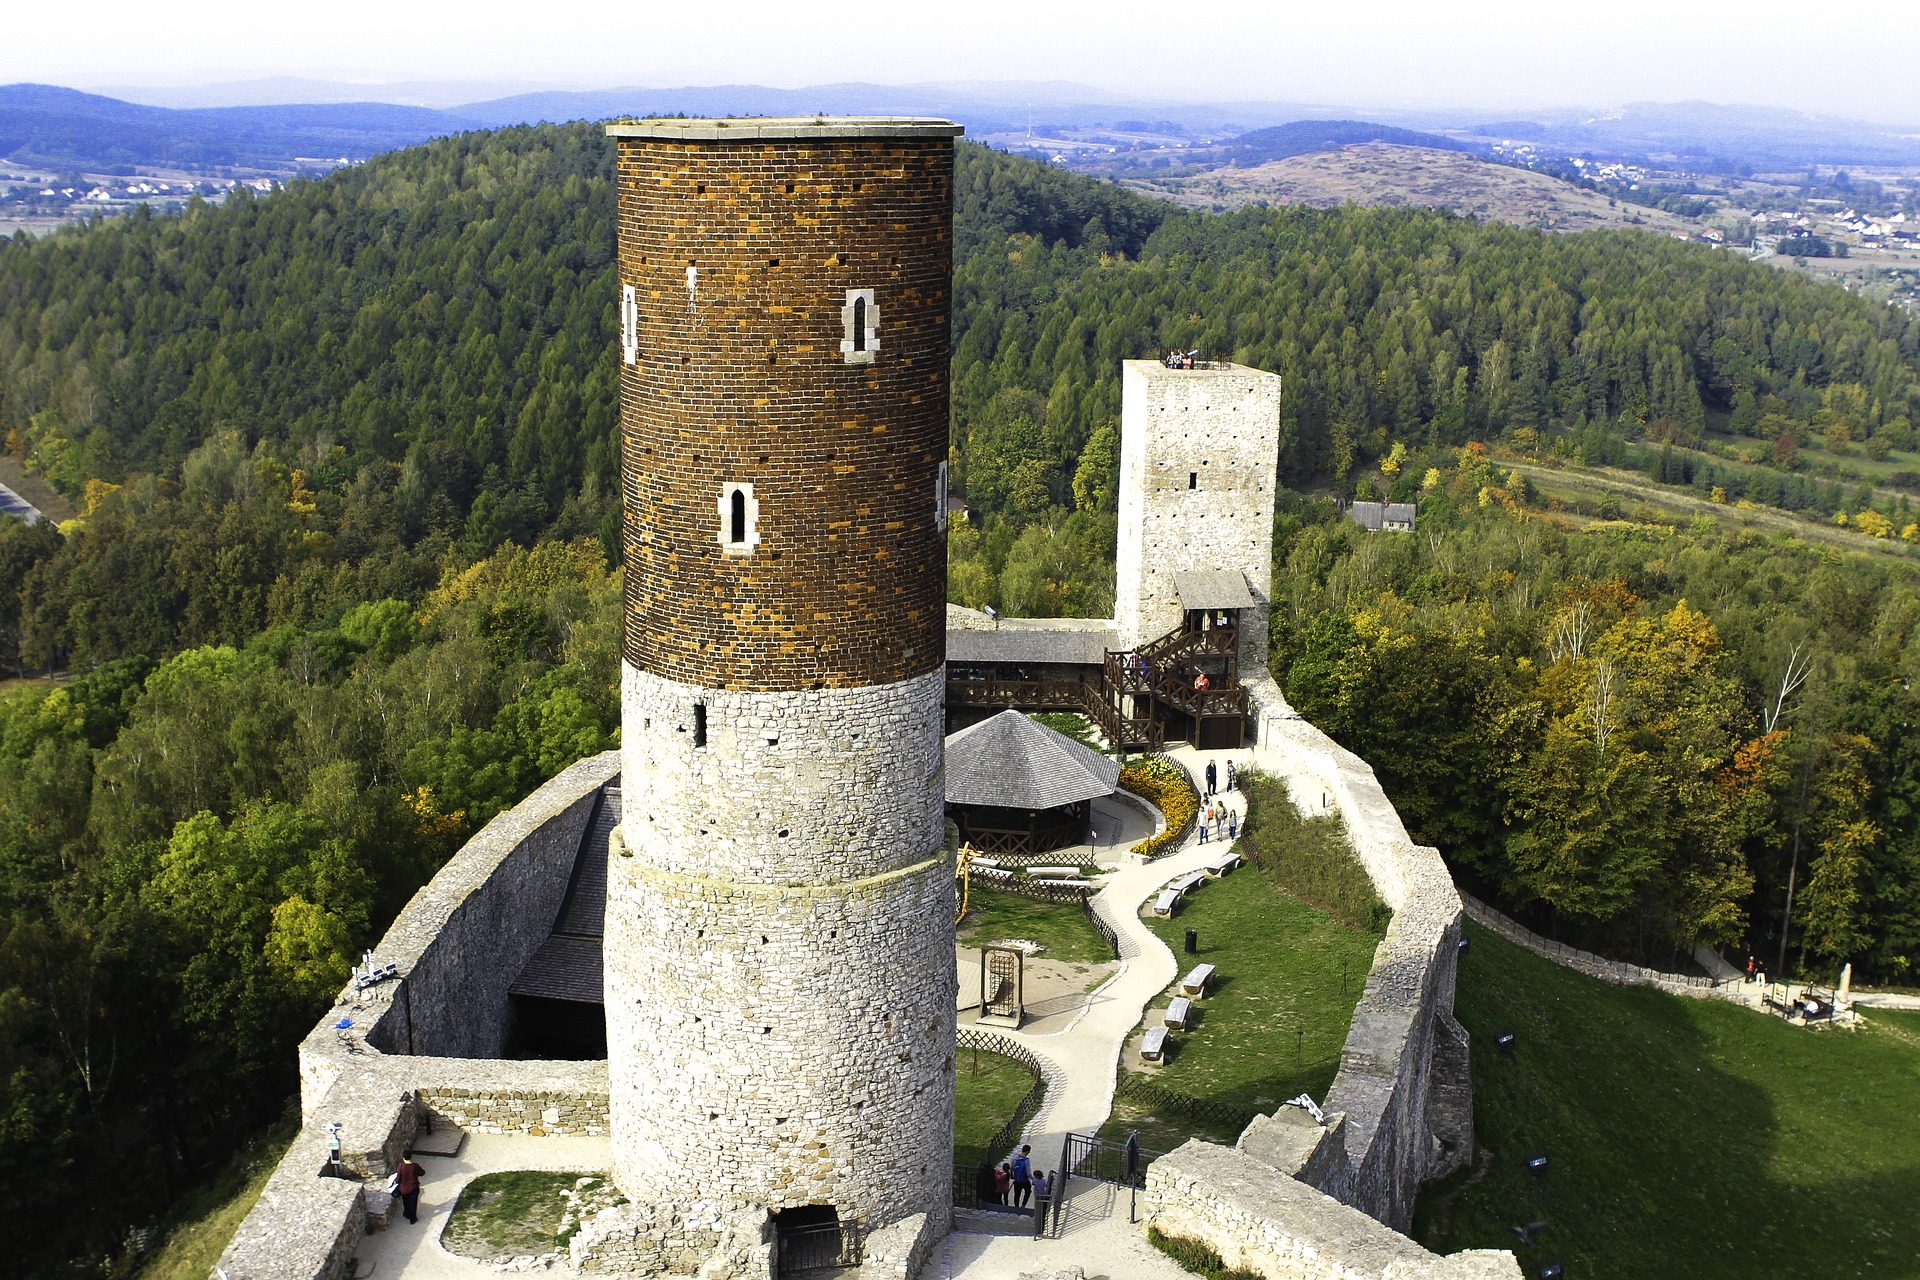 Zamek w Chęcinach w miejscowości Chęciny